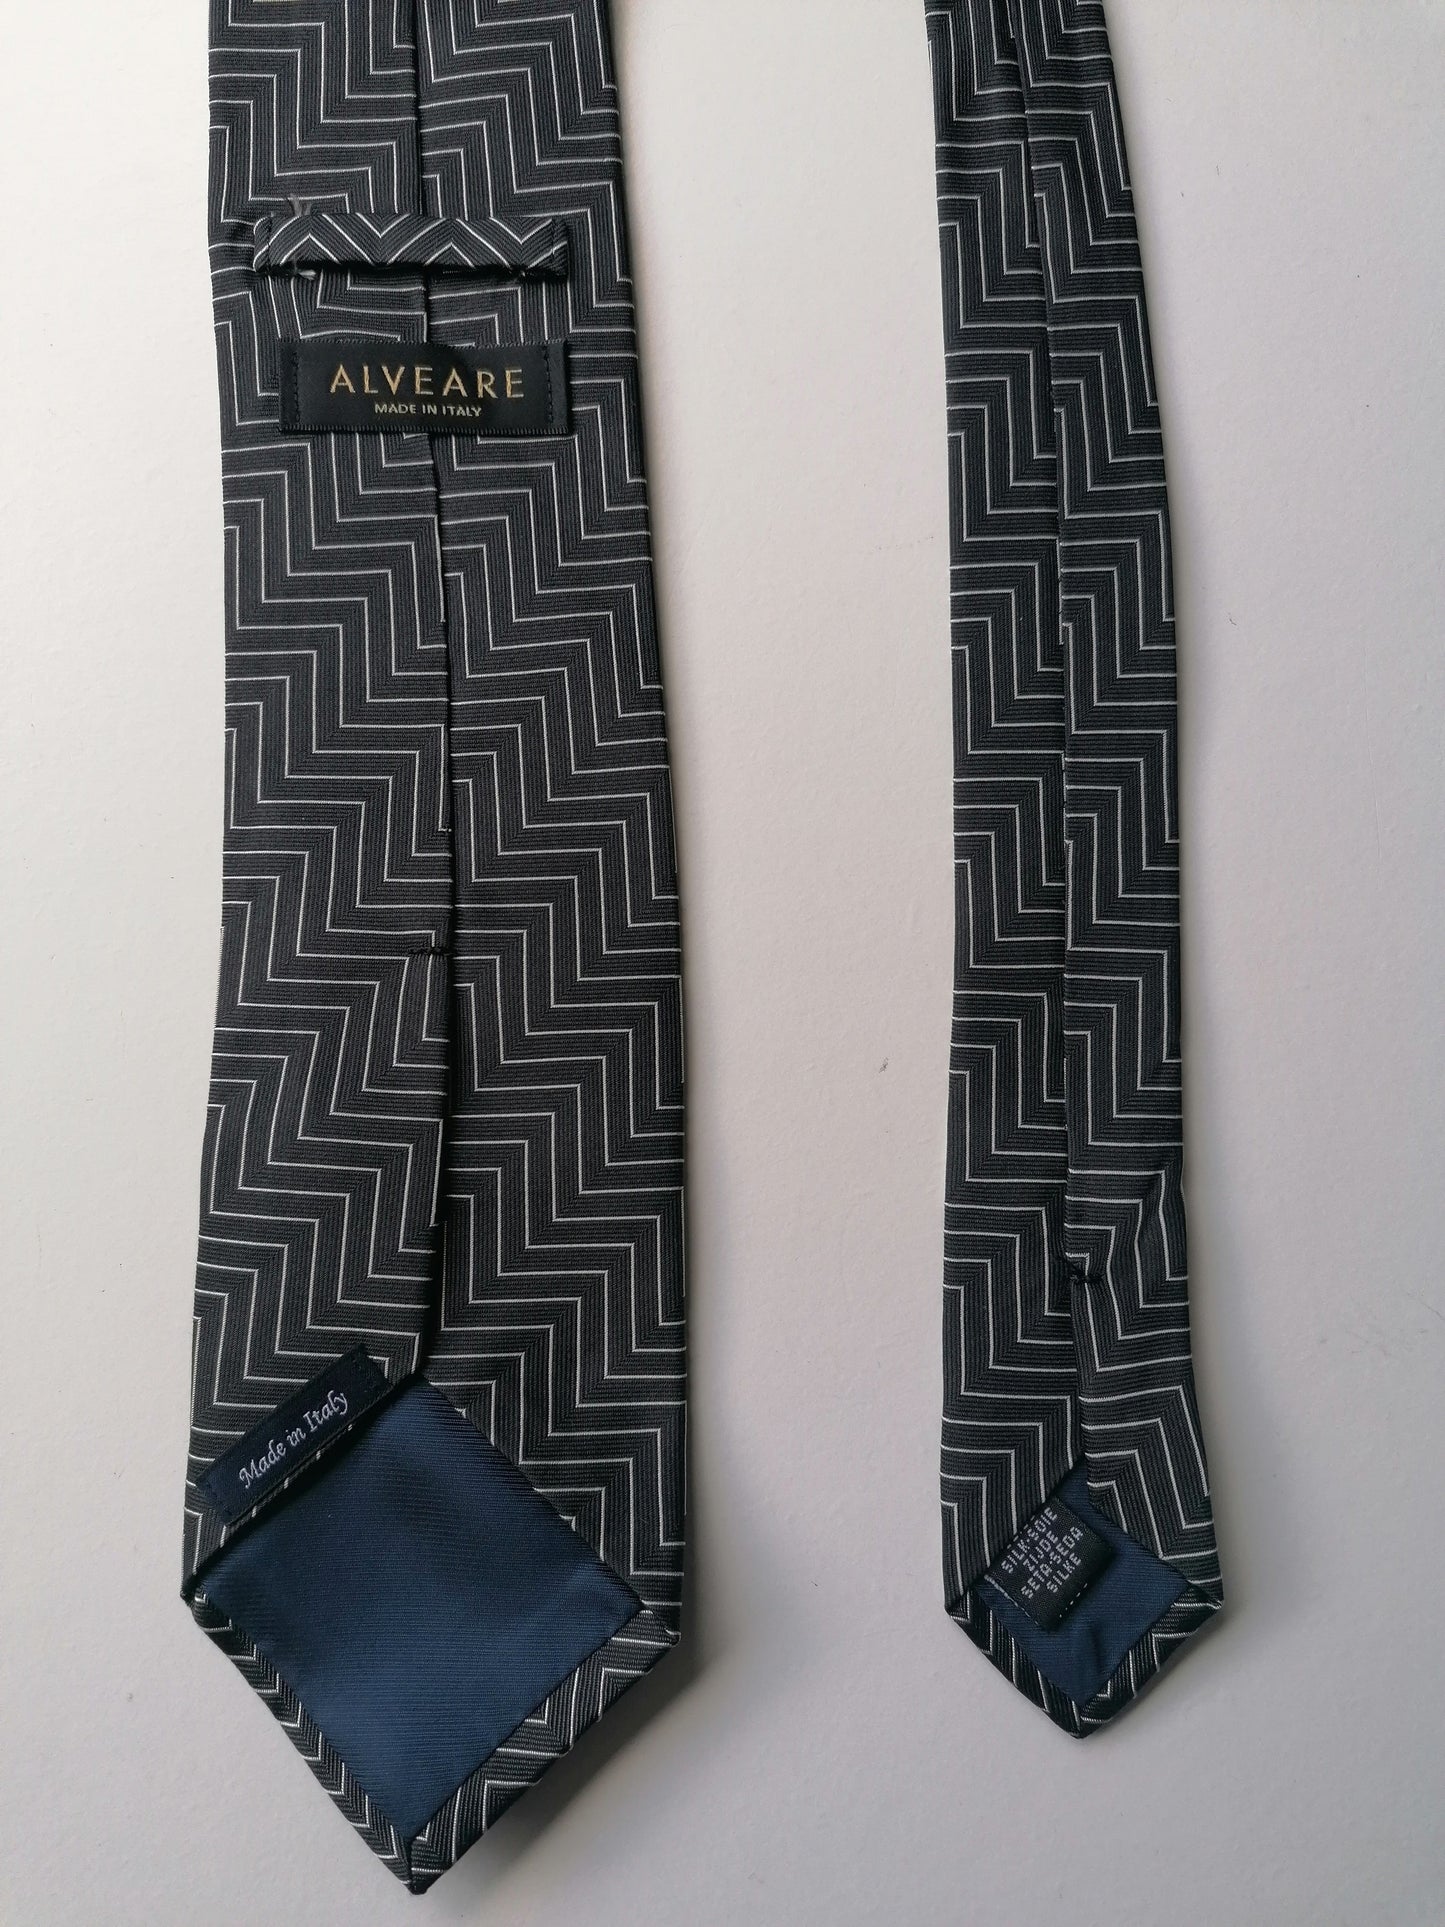 Alveare silk tie. Black white colored.